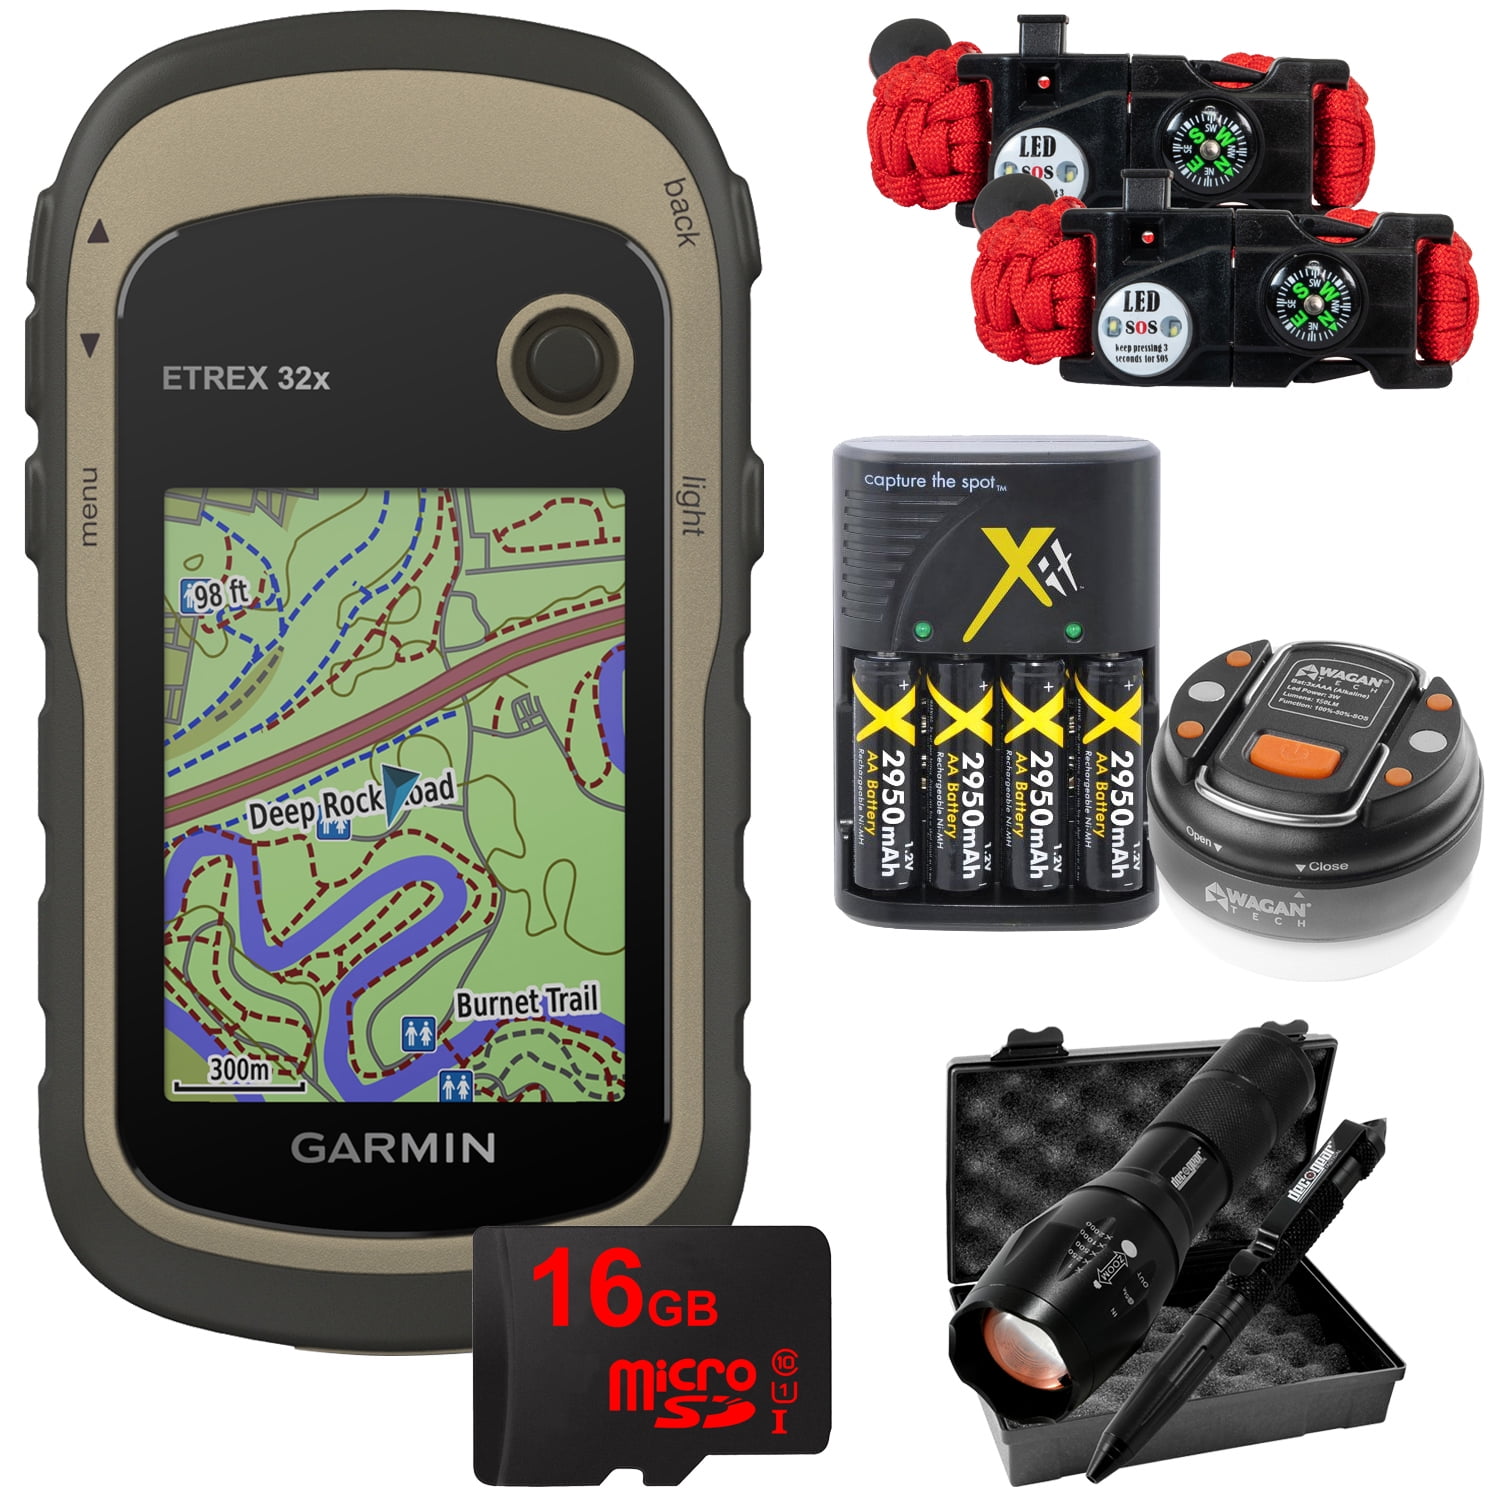 Garmin eTrex 32x GPS